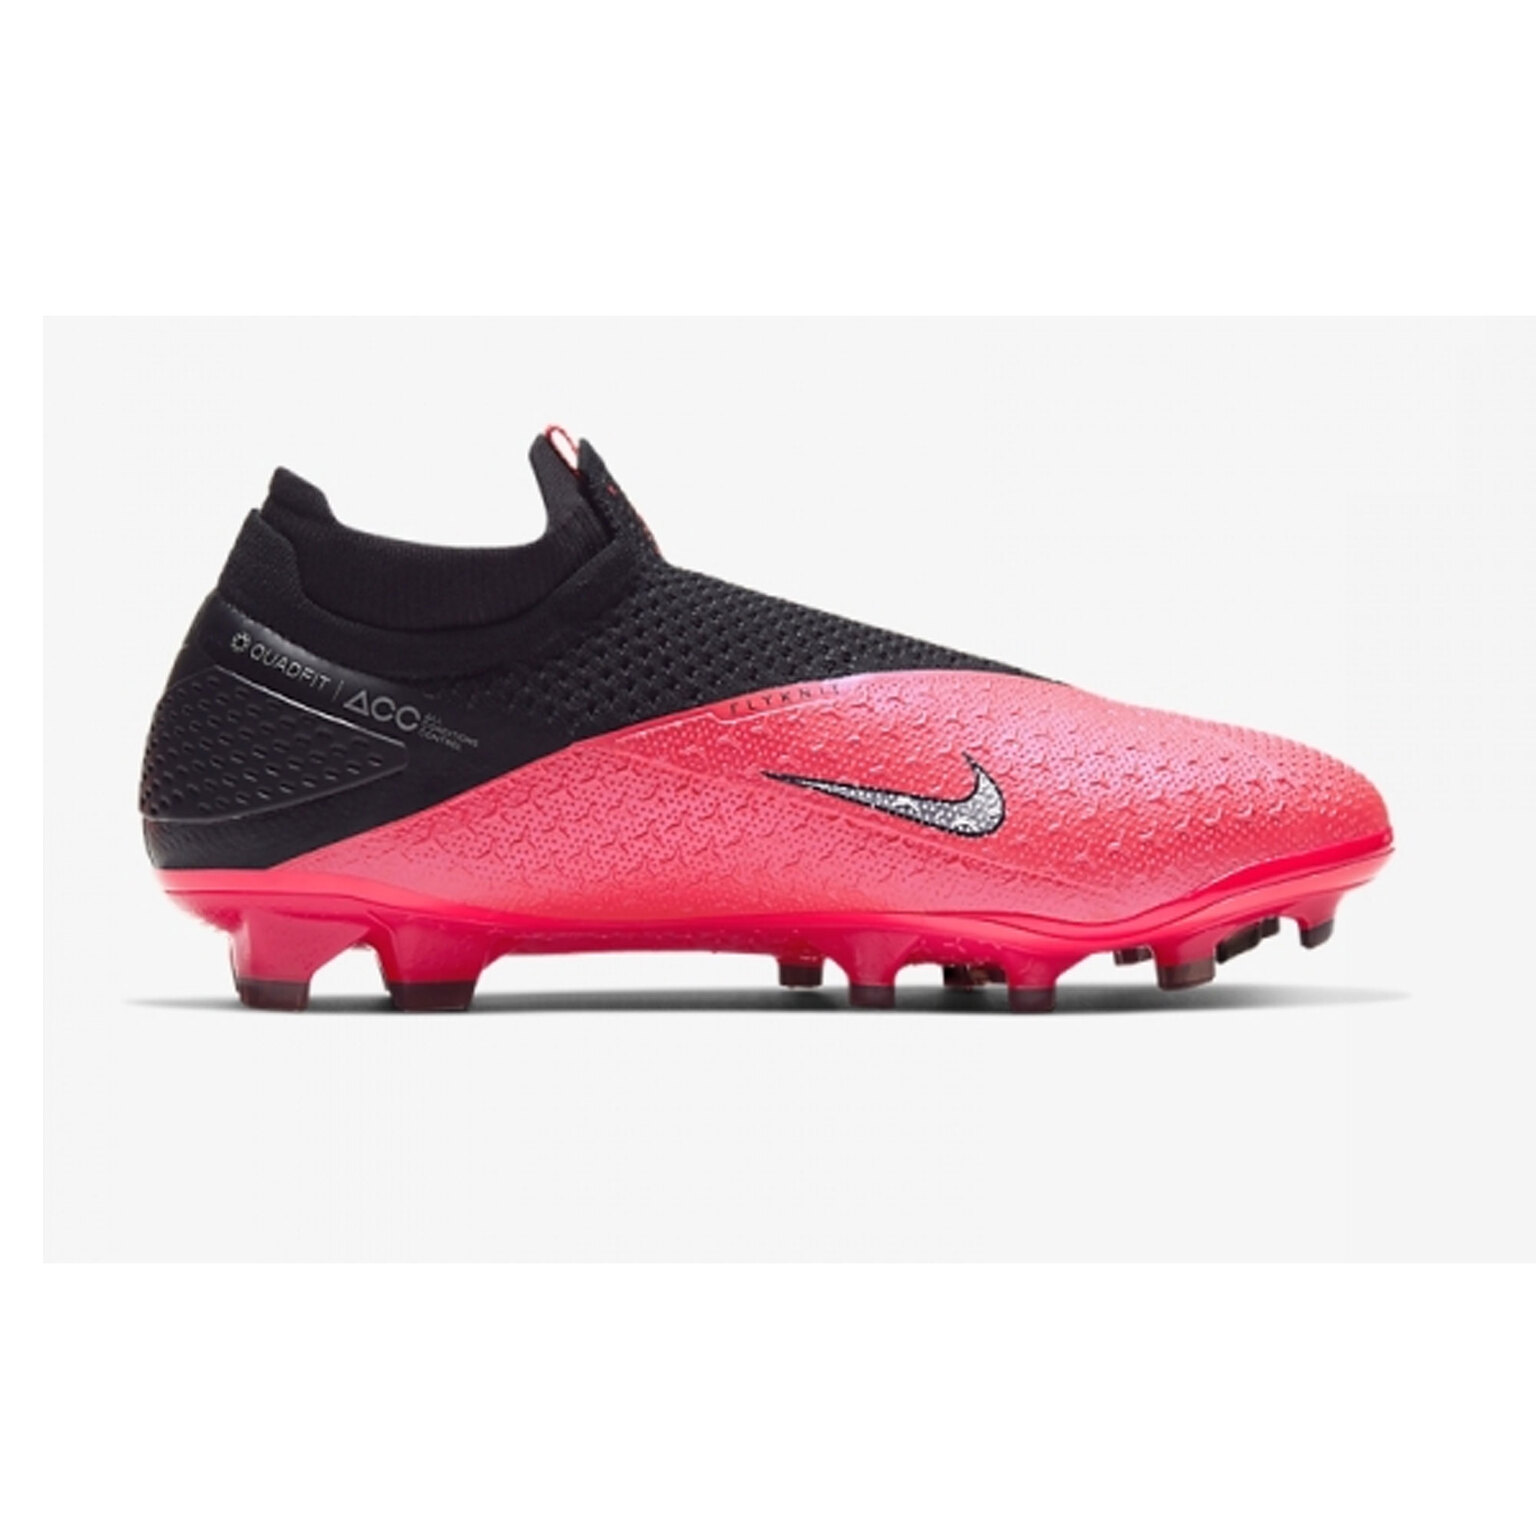 Бутсы Nike Phantom Vision 2 Elite DF FG CD4161-606 – купить бутсы в  интернет магазине Footballstore, цена, фото, отзывы